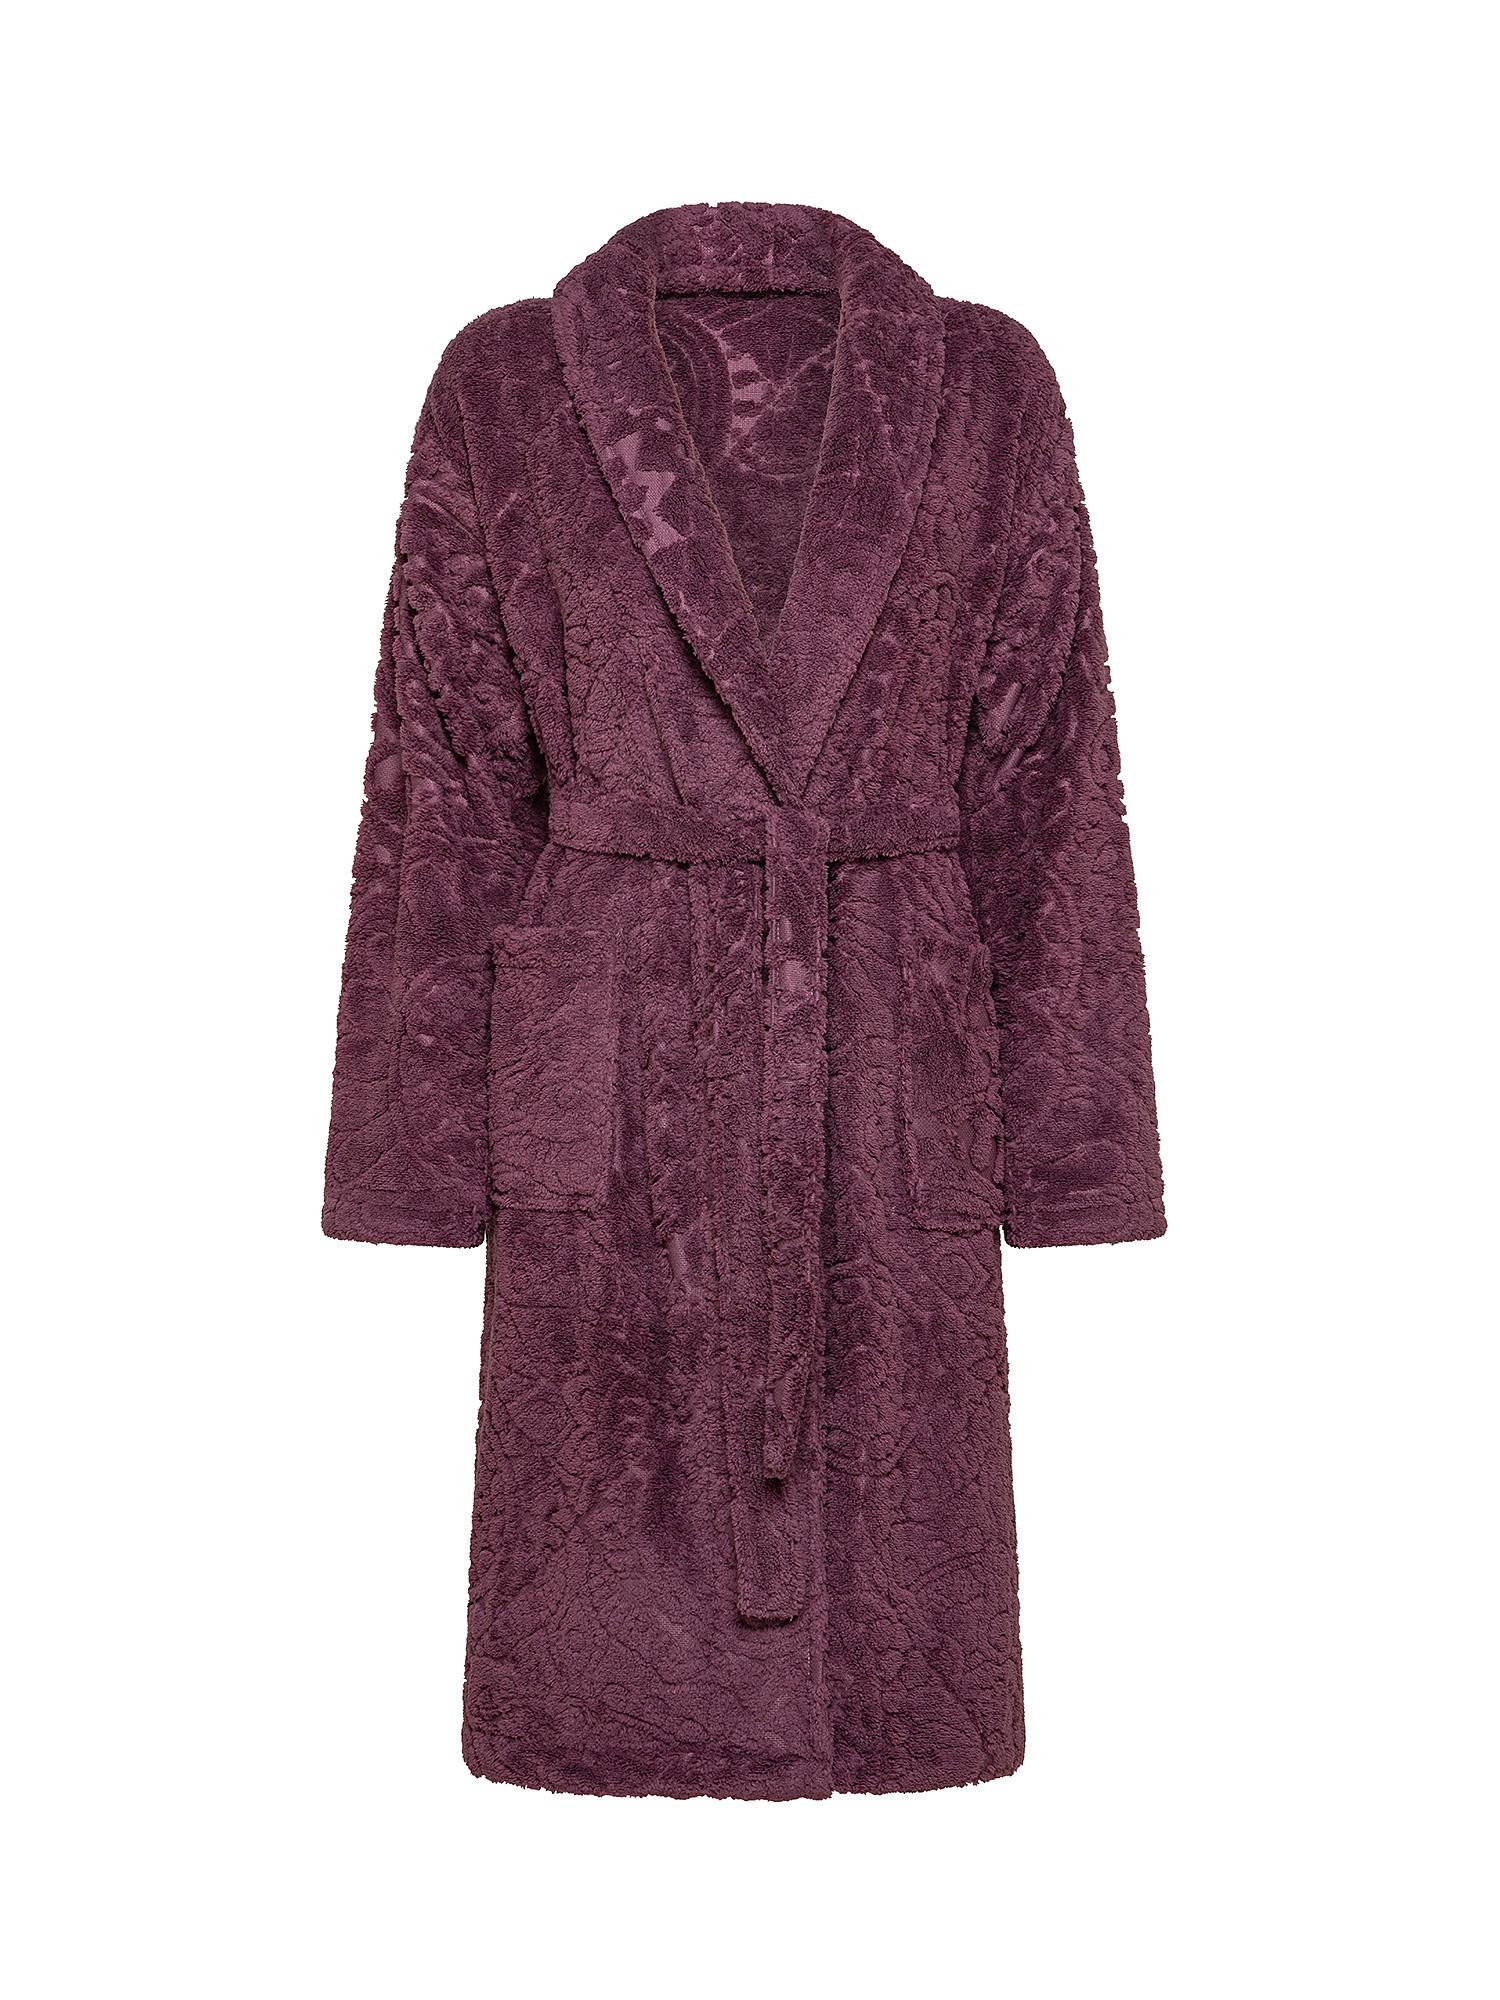 Solid color fleece dressing gown, Dark Pink, large image number 0